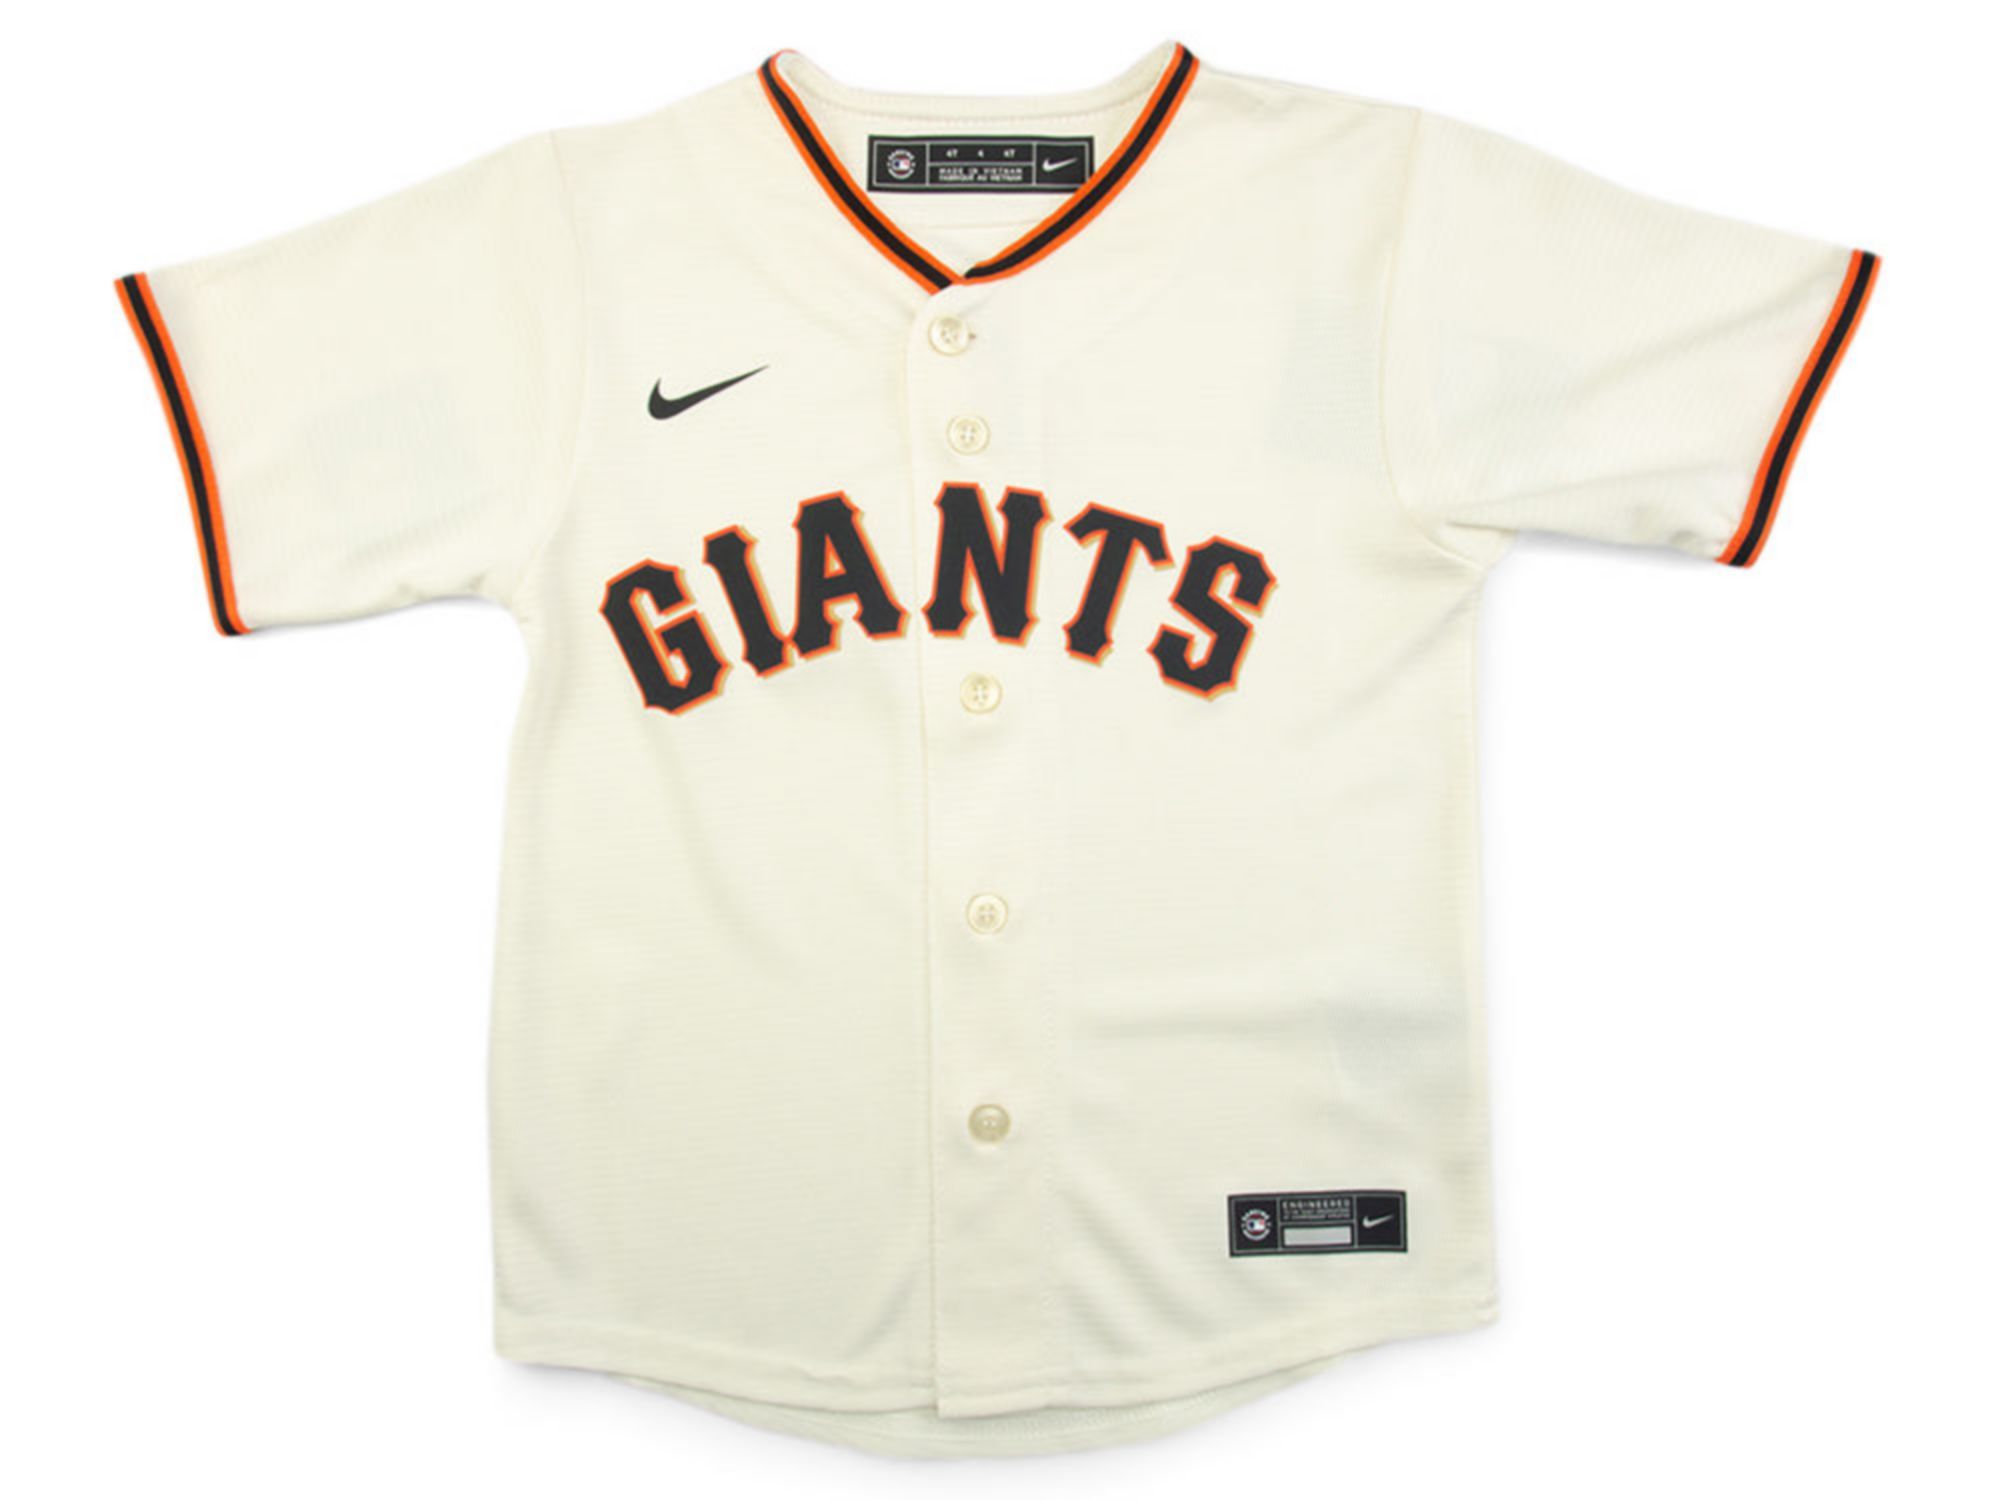 Nike Youth San Francisco Giants Official Blank Jersey & Reviews - Sports Fan Shop By Lids - Men - Macy's